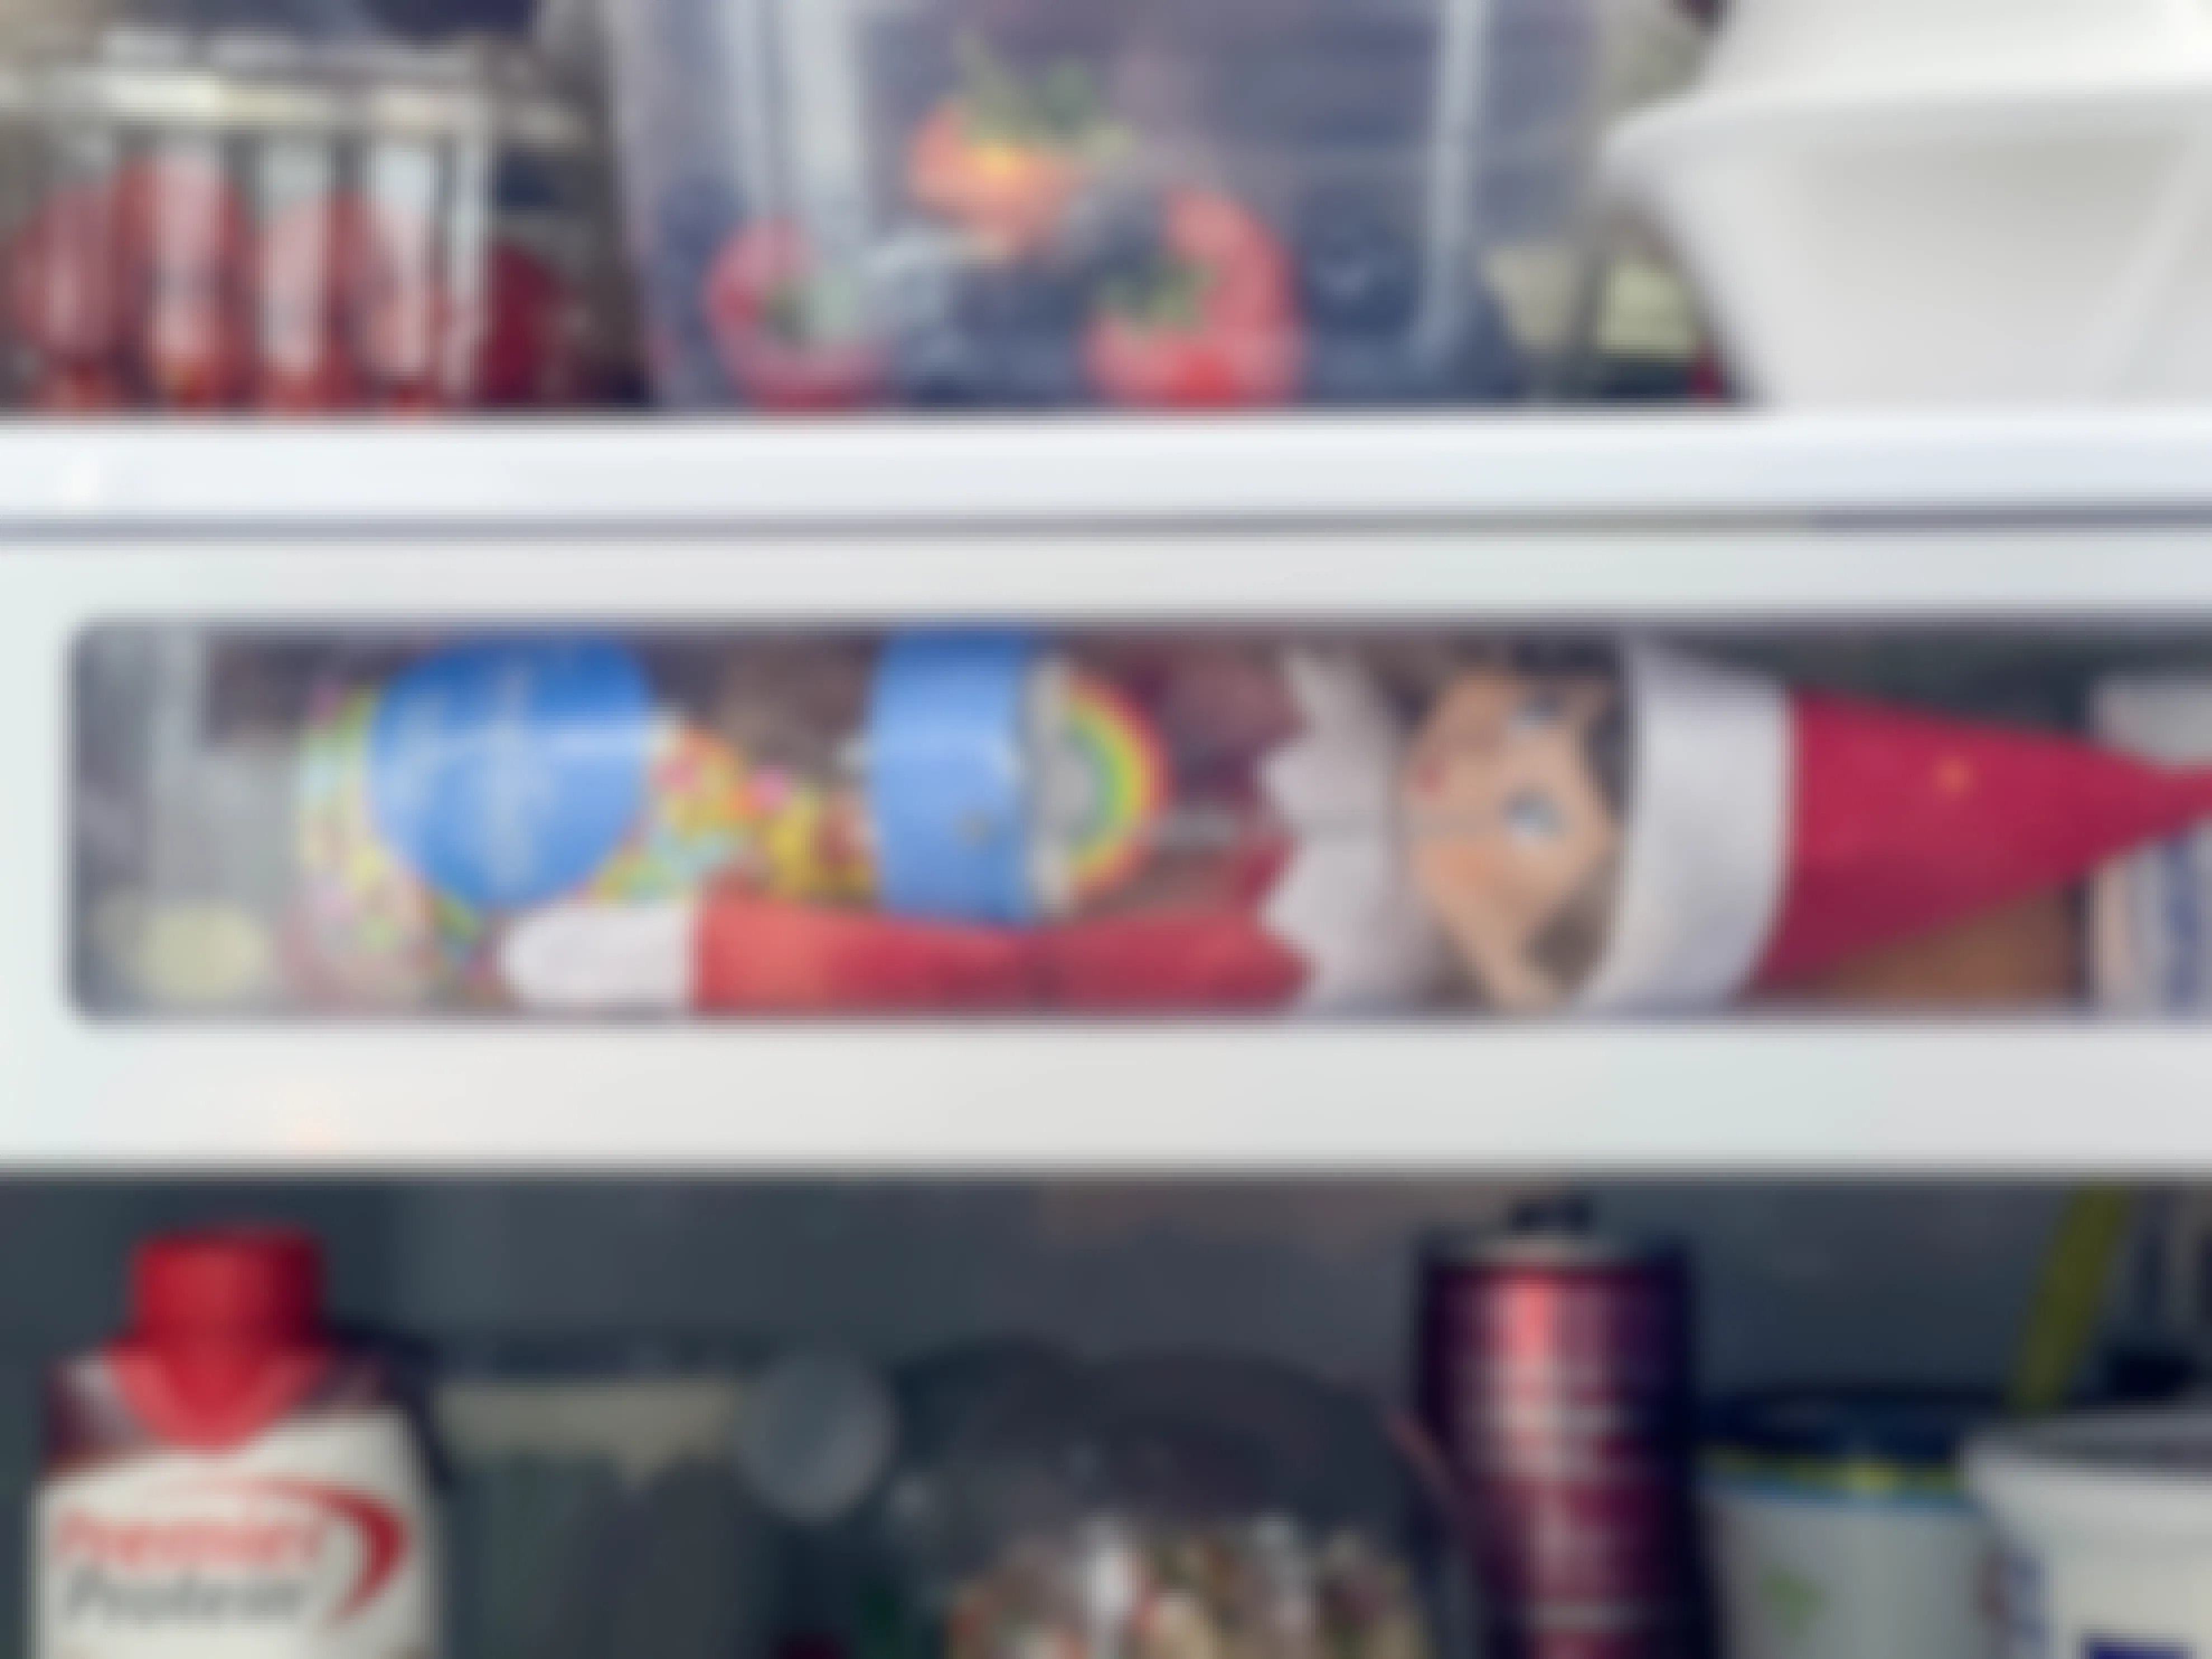 an elf on the shelf doll inside a fridge drawer holding sprinkles